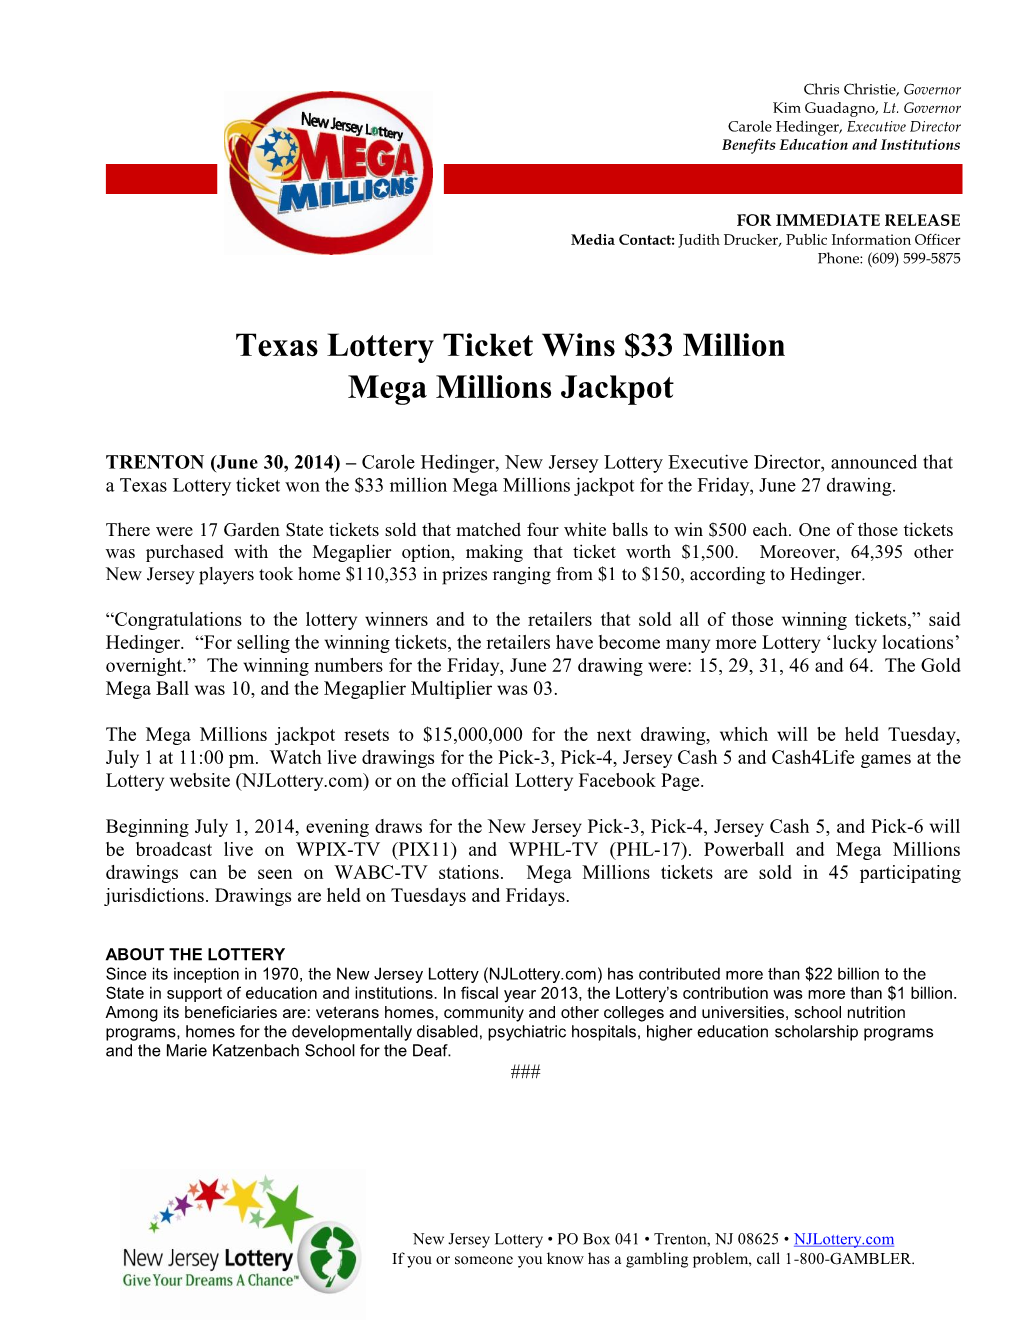 Texas Lottery Ticket Wins $33 Million Mega Millions Jackpot